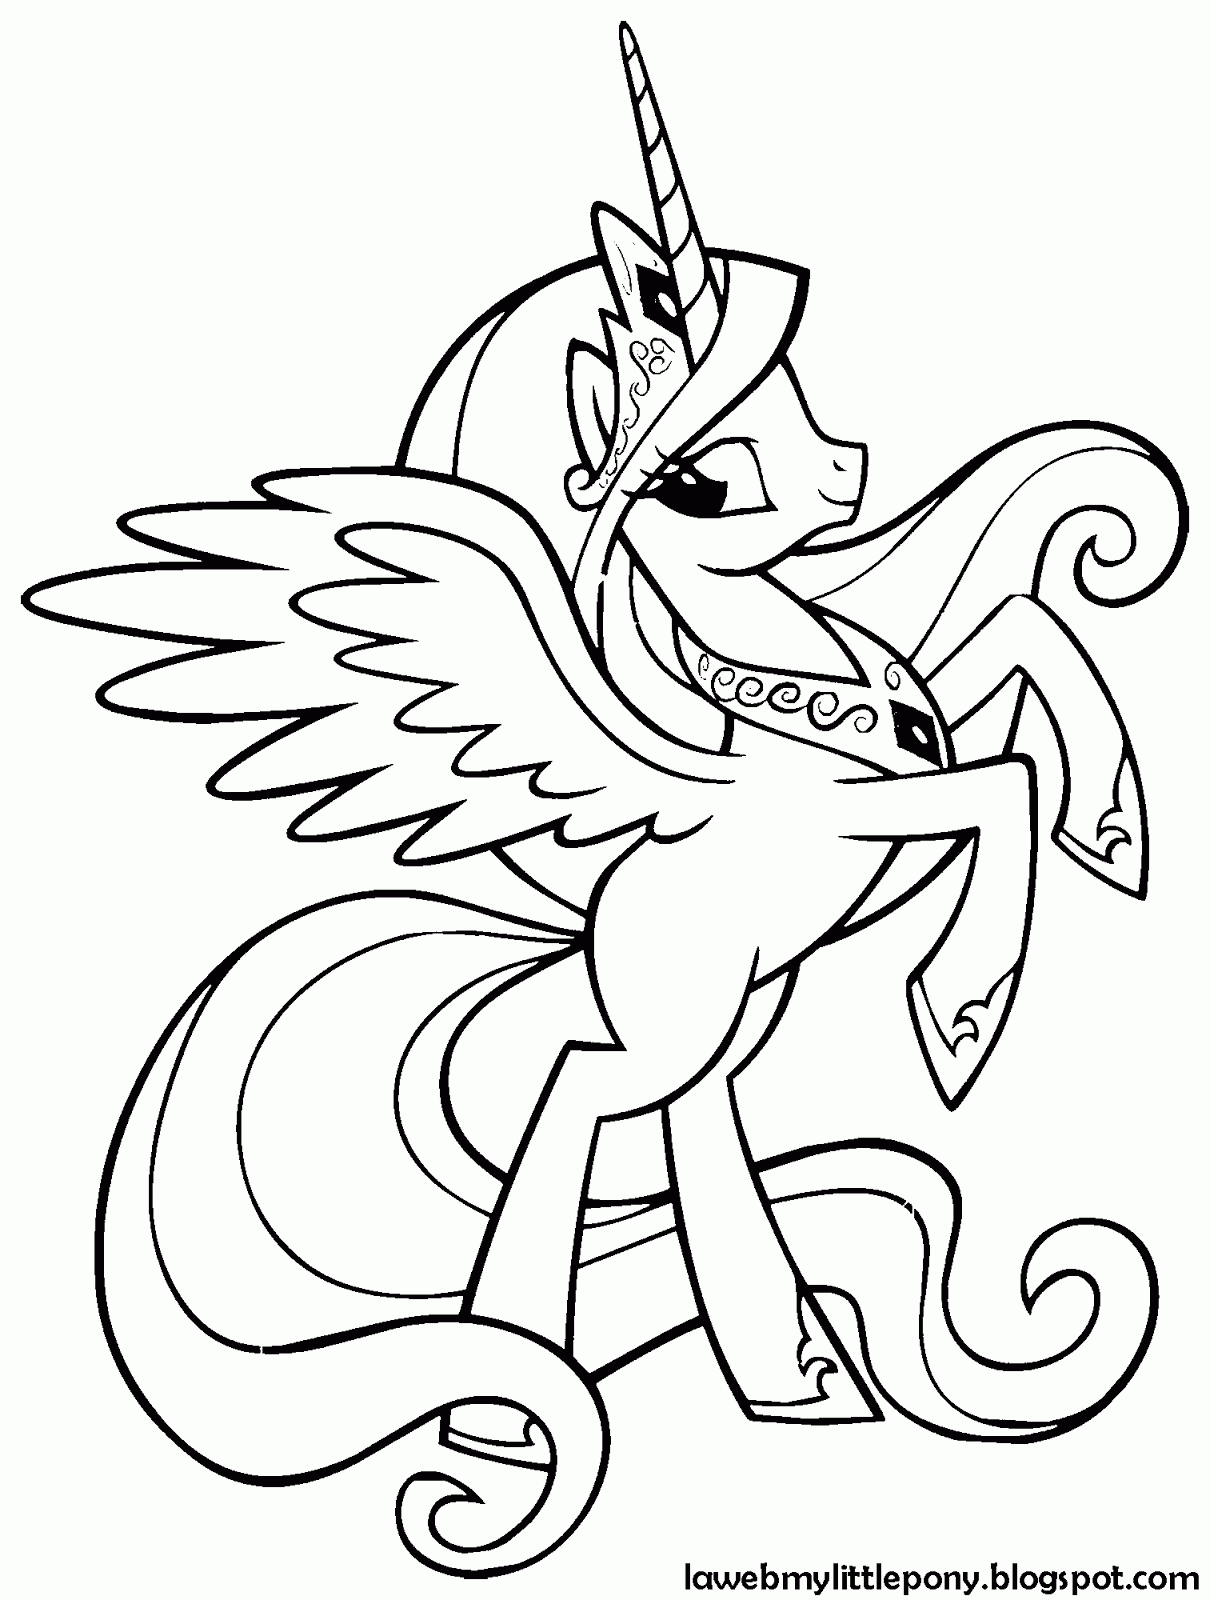 Dibujos para colorear de My Little Pony princesa celestia - Imagui